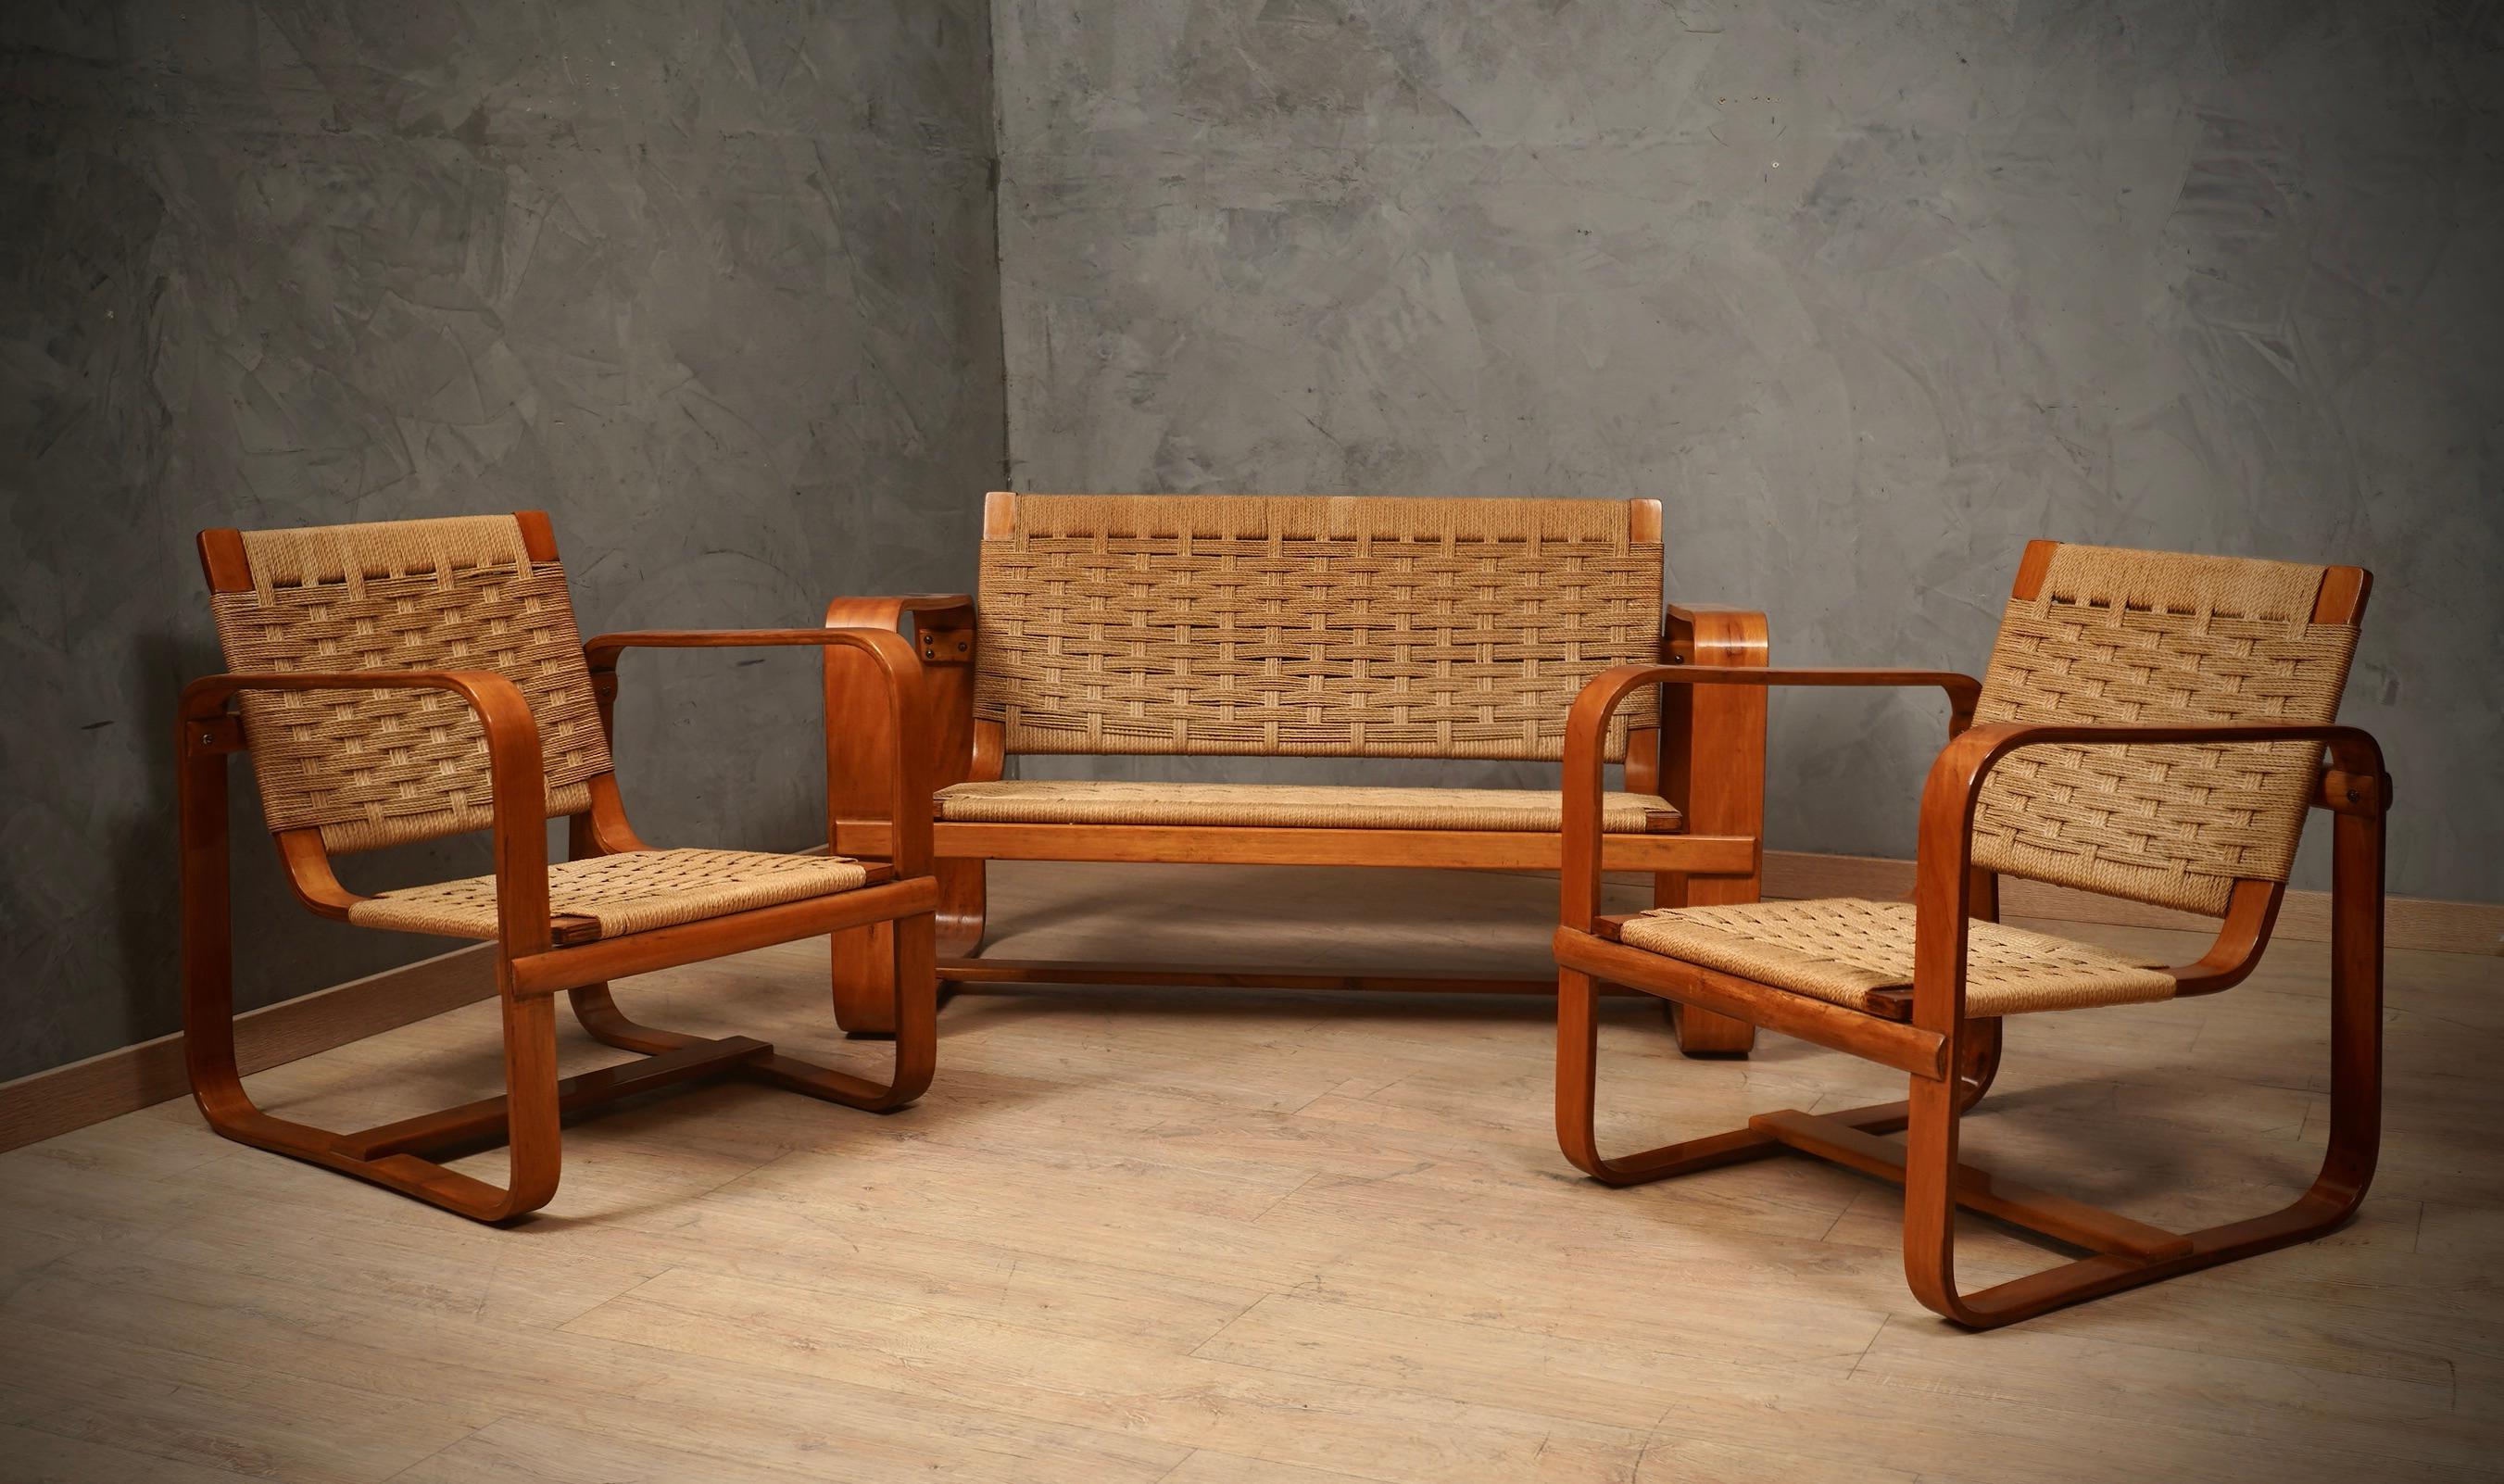 Une paire de fauteuils très rare et essentielle de 1940. 

Giuseppe Pagano Pogatschnig e Gino Maggioni ont conçu ce fauteuil fin en bois courbé. Il est formé par deux grands carrés en bois courbé, (traitement typique de cette période historique),